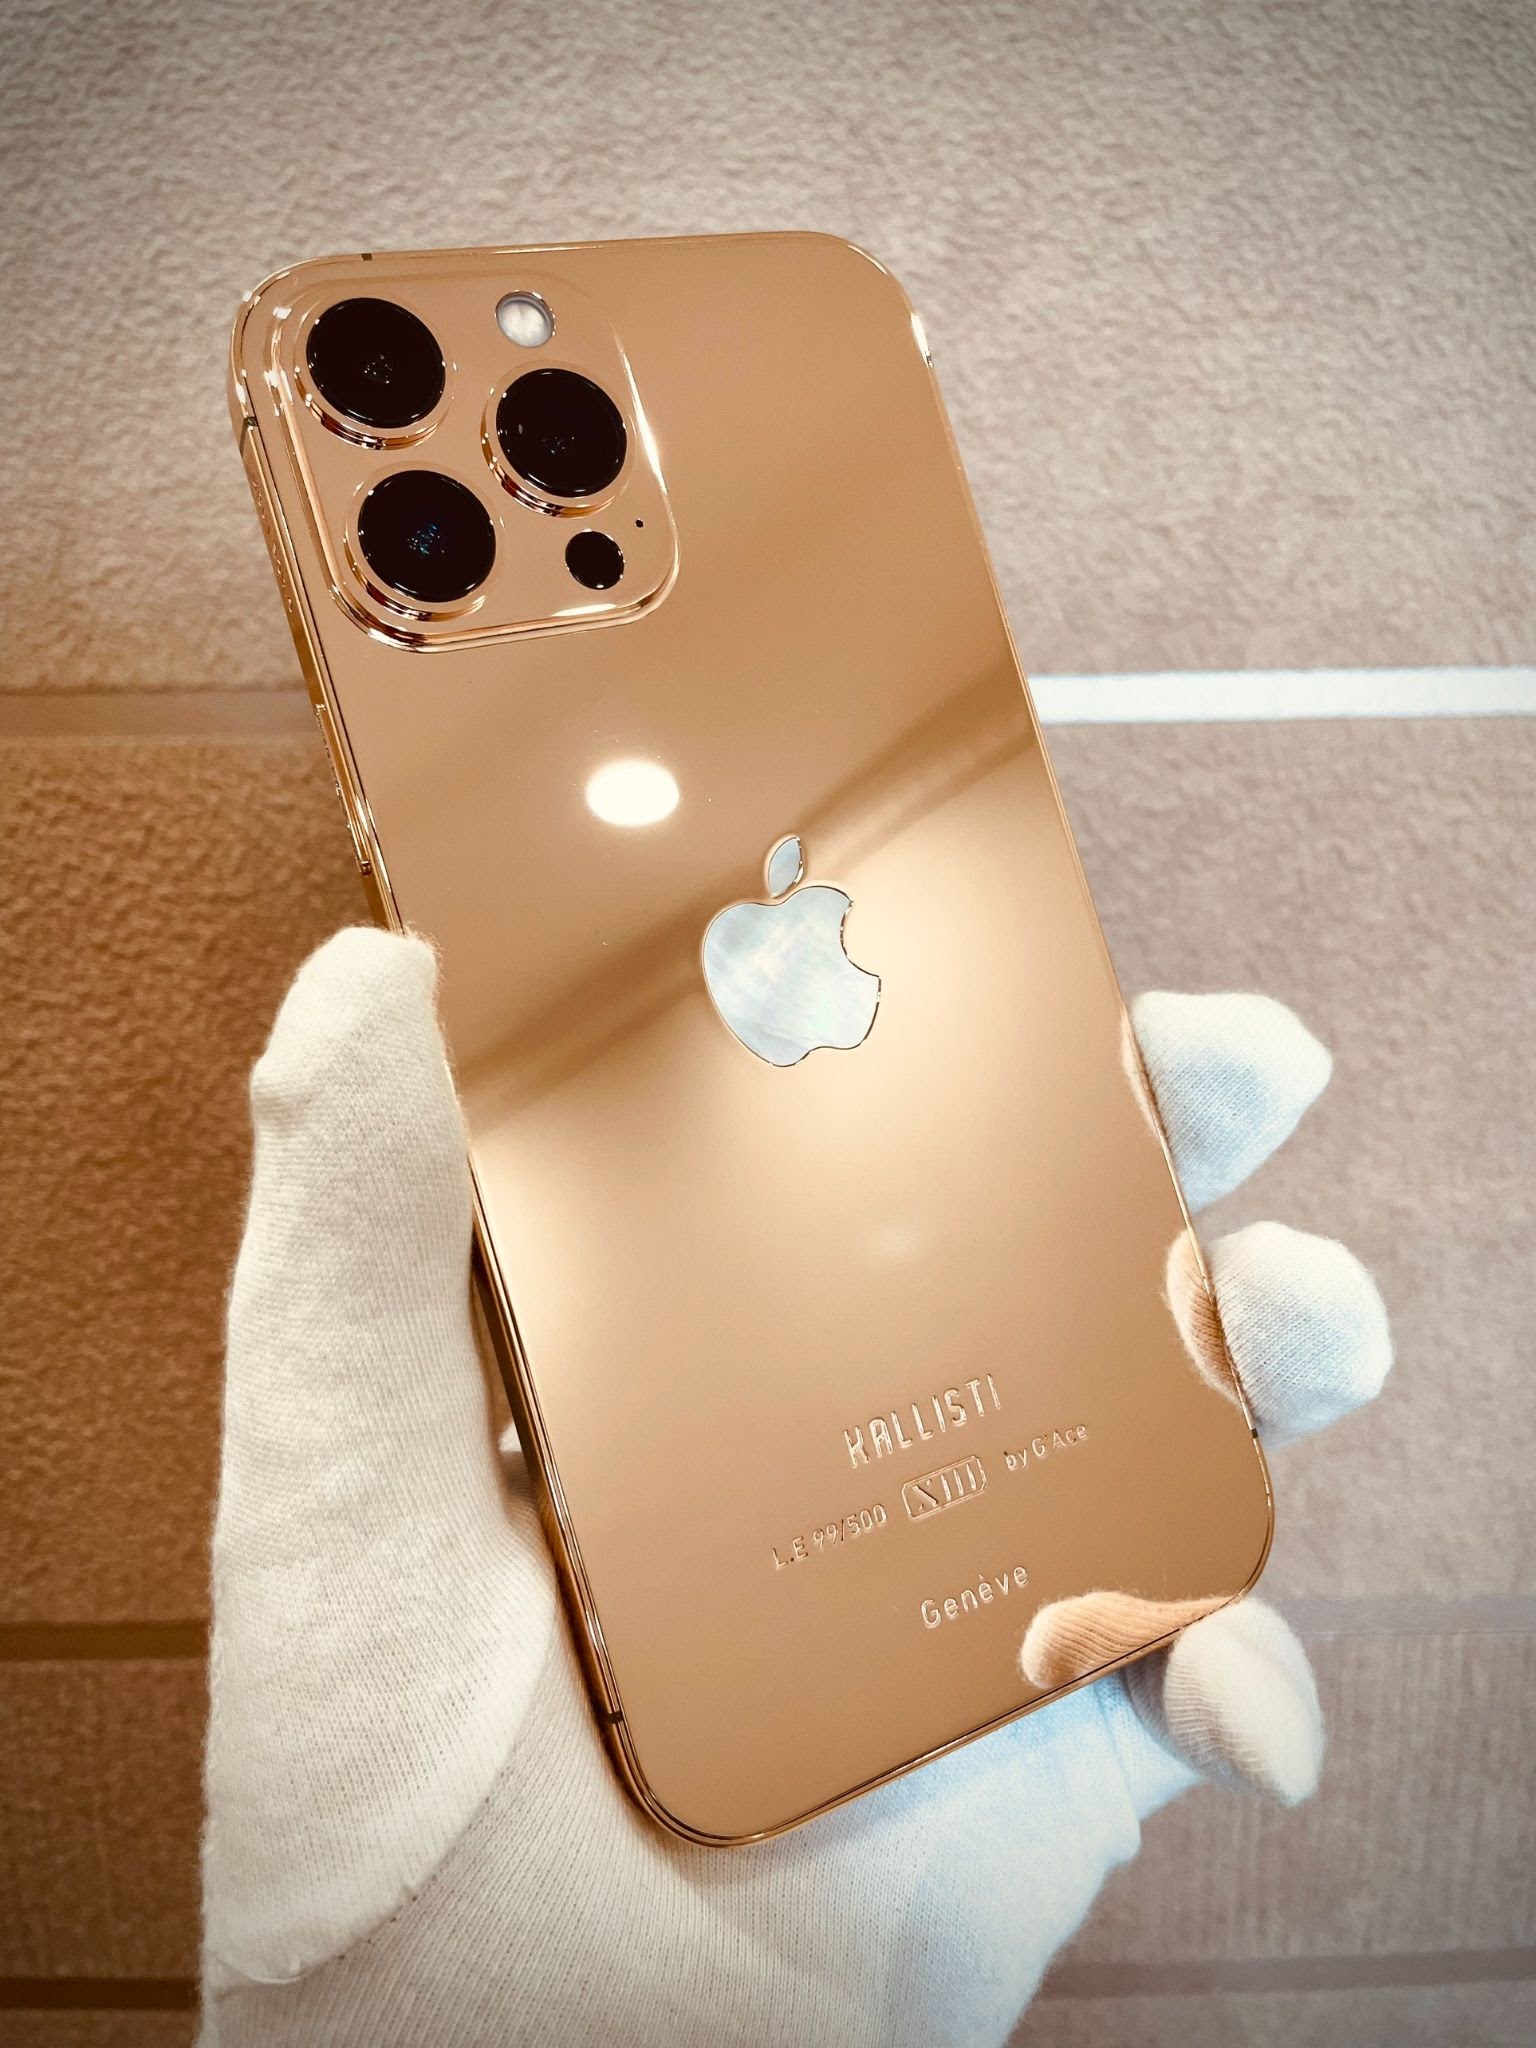 Với thiết kế sang trọng và mạ vàng đẹp mắt, iPhone 13 Pro Max mạ vàng sẽ khiến bạn cảm thấy đẳng cấp và đầy phong cách. Đừng bỏ lỡ cơ hội được sở hữu sản phẩm độc đáo này và tận hưởng những trải nghiệm tuyệt vời từ iPhone 13 Pro Max mạ vàng.